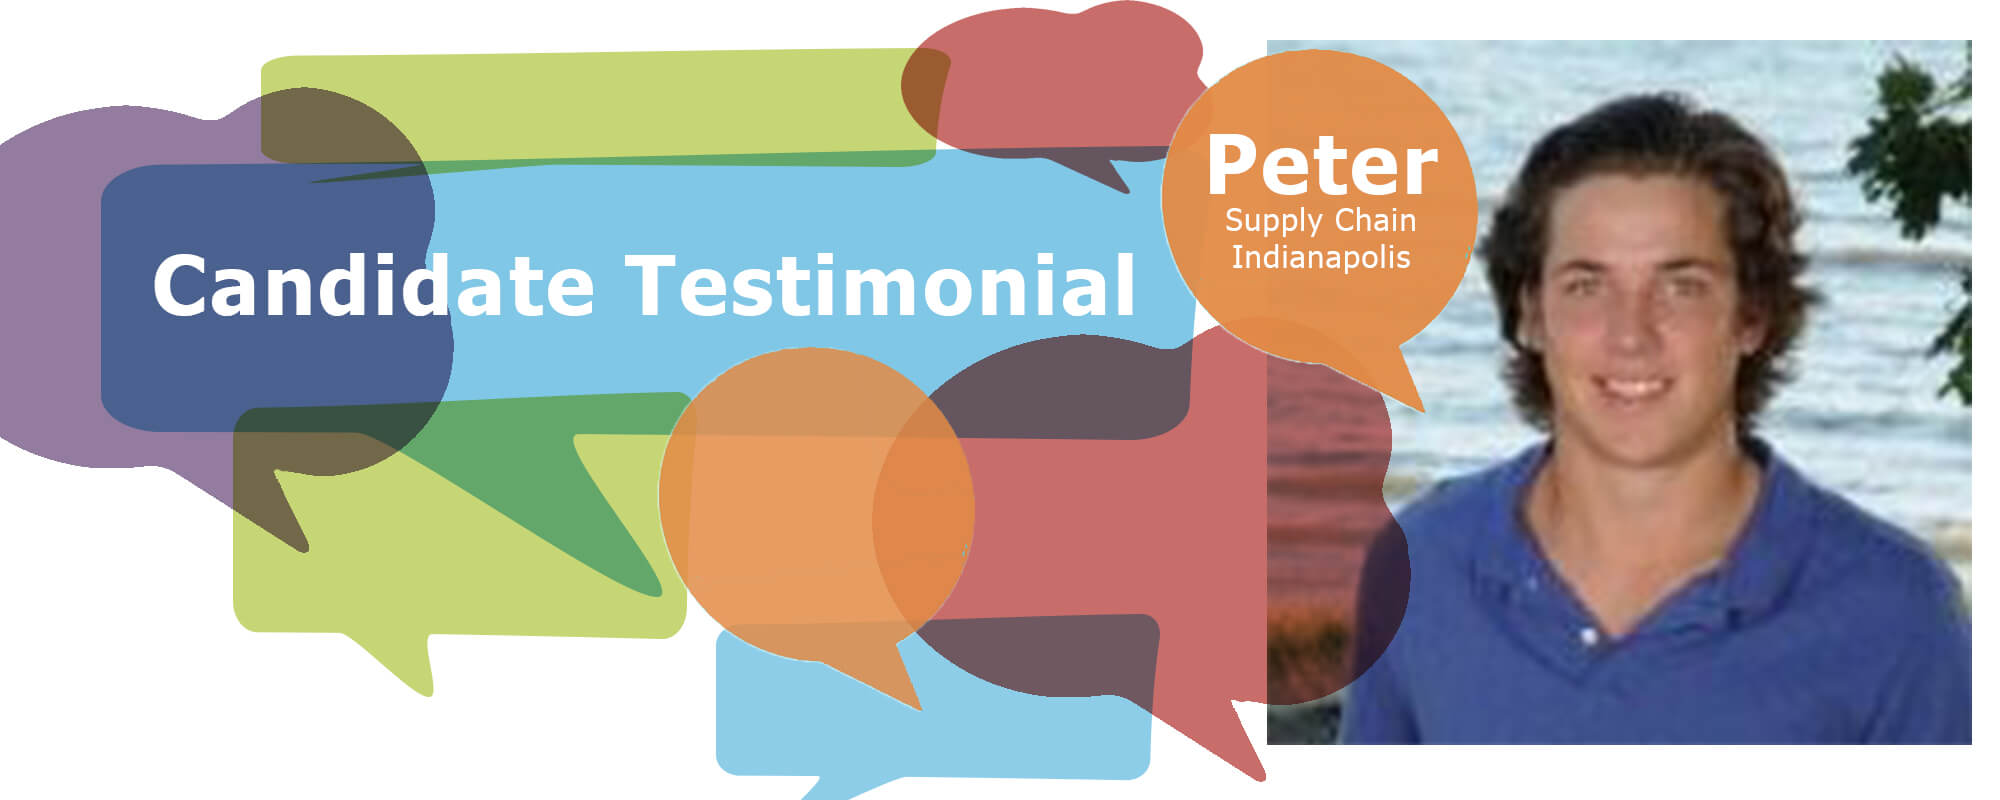 Candidate Testimonial: Peter